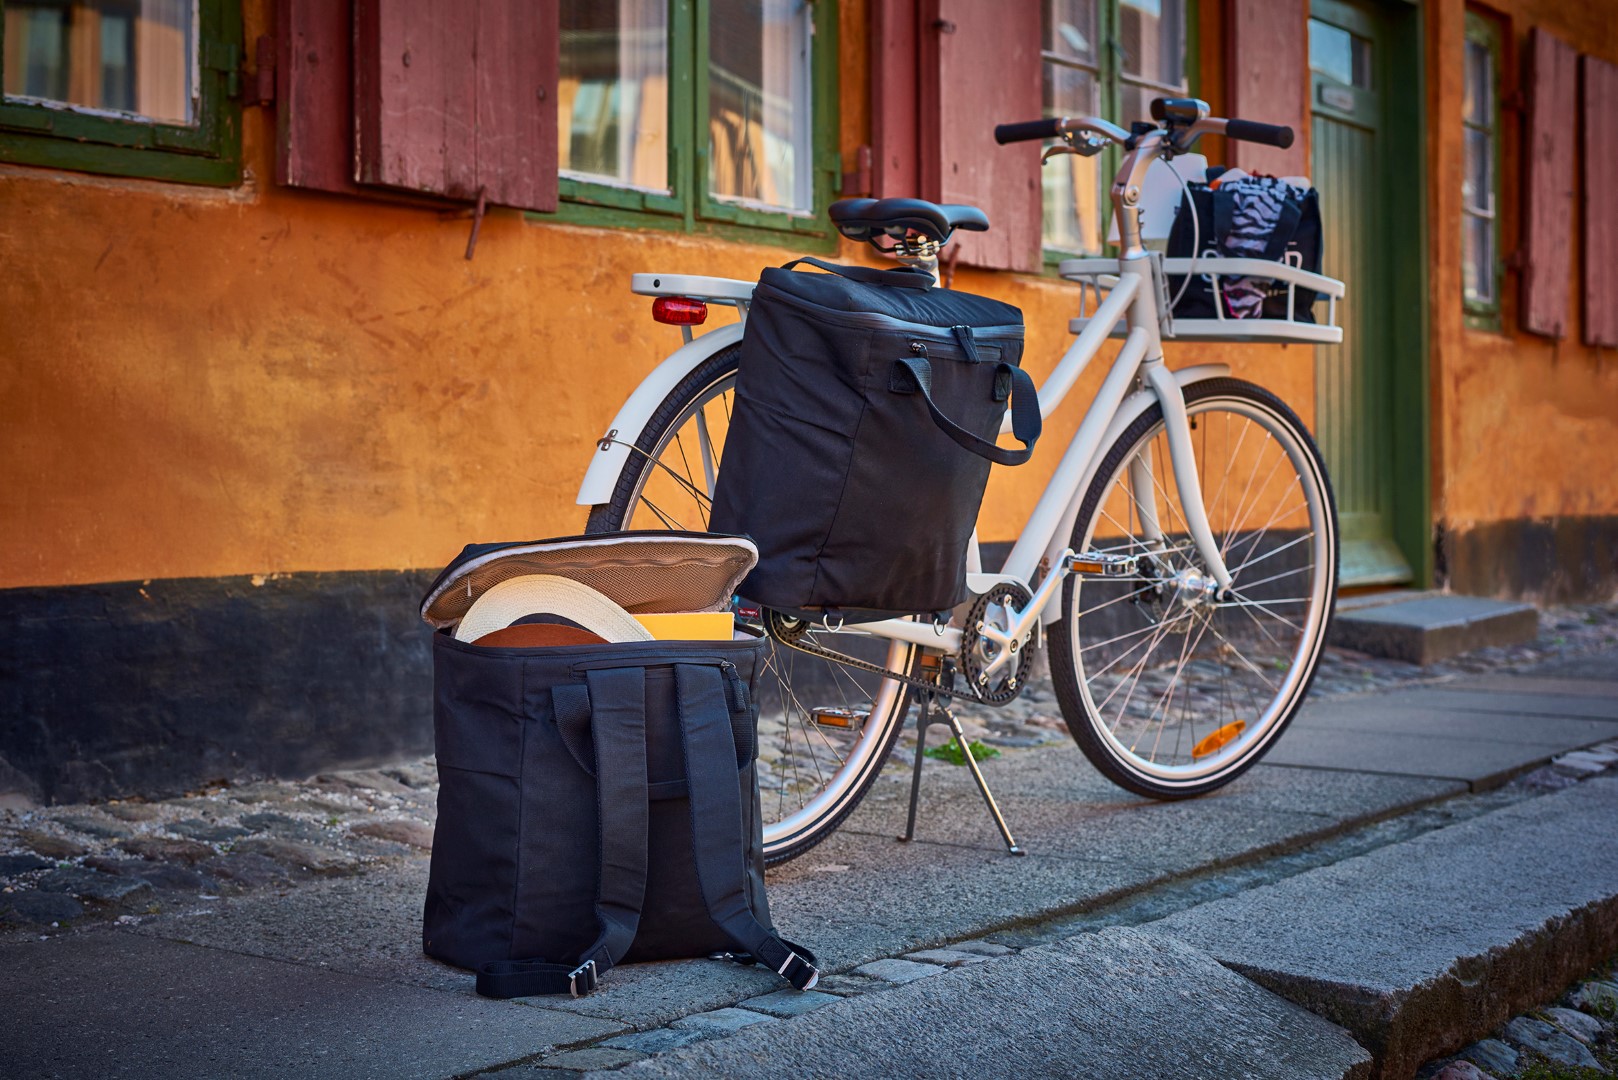 Ikea bicicletta Sladda: la nuova bici personalizzabile con diversi accessori